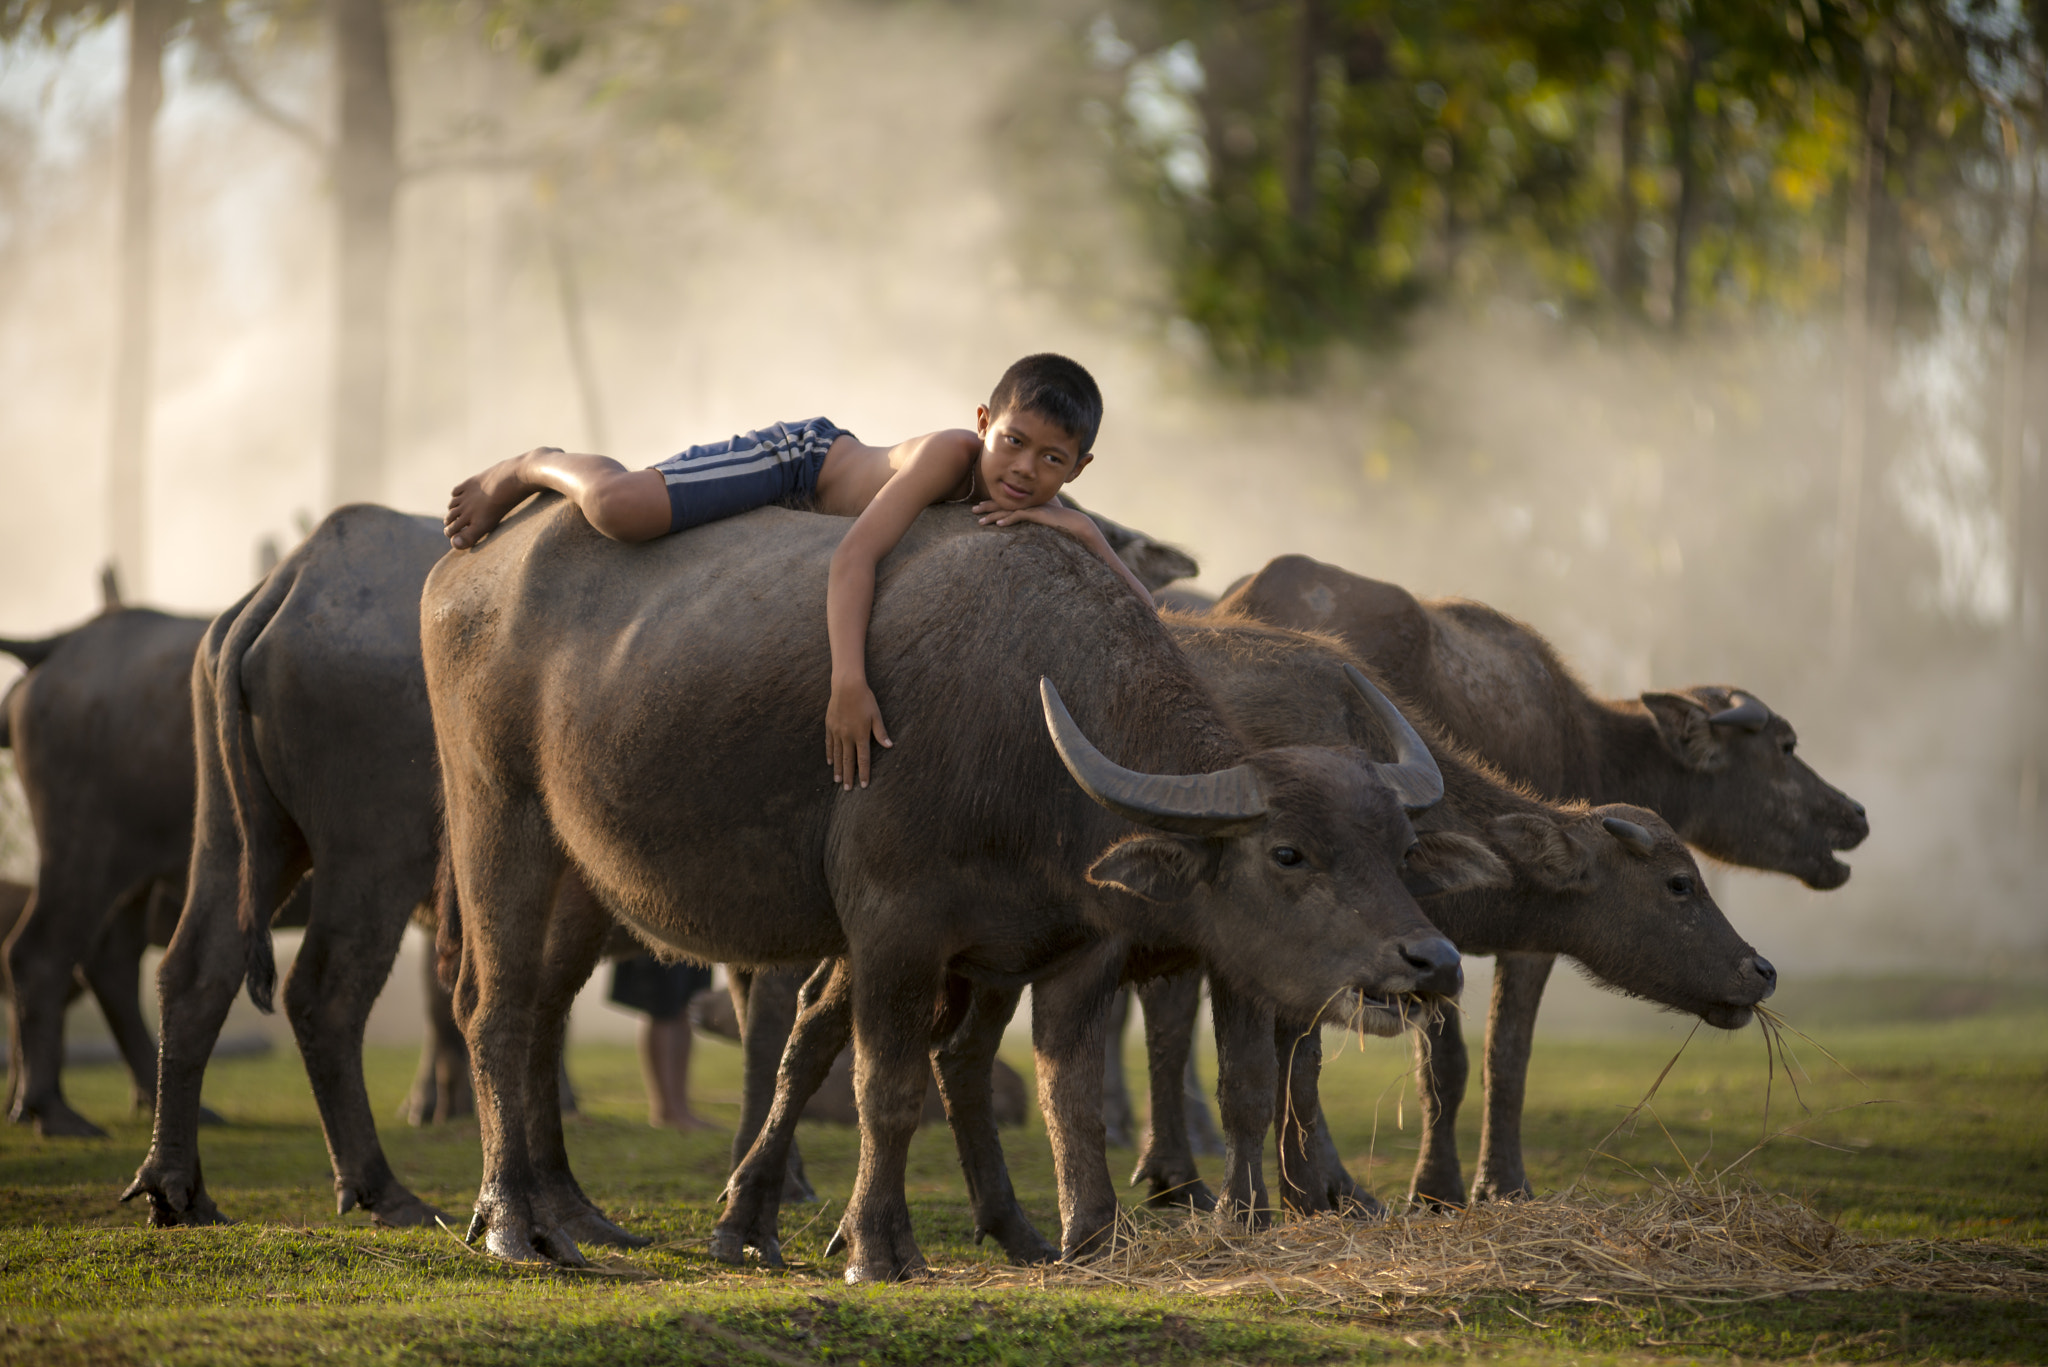 Nikon D800E sample photo. The boy on a water buffalo in thailand photography